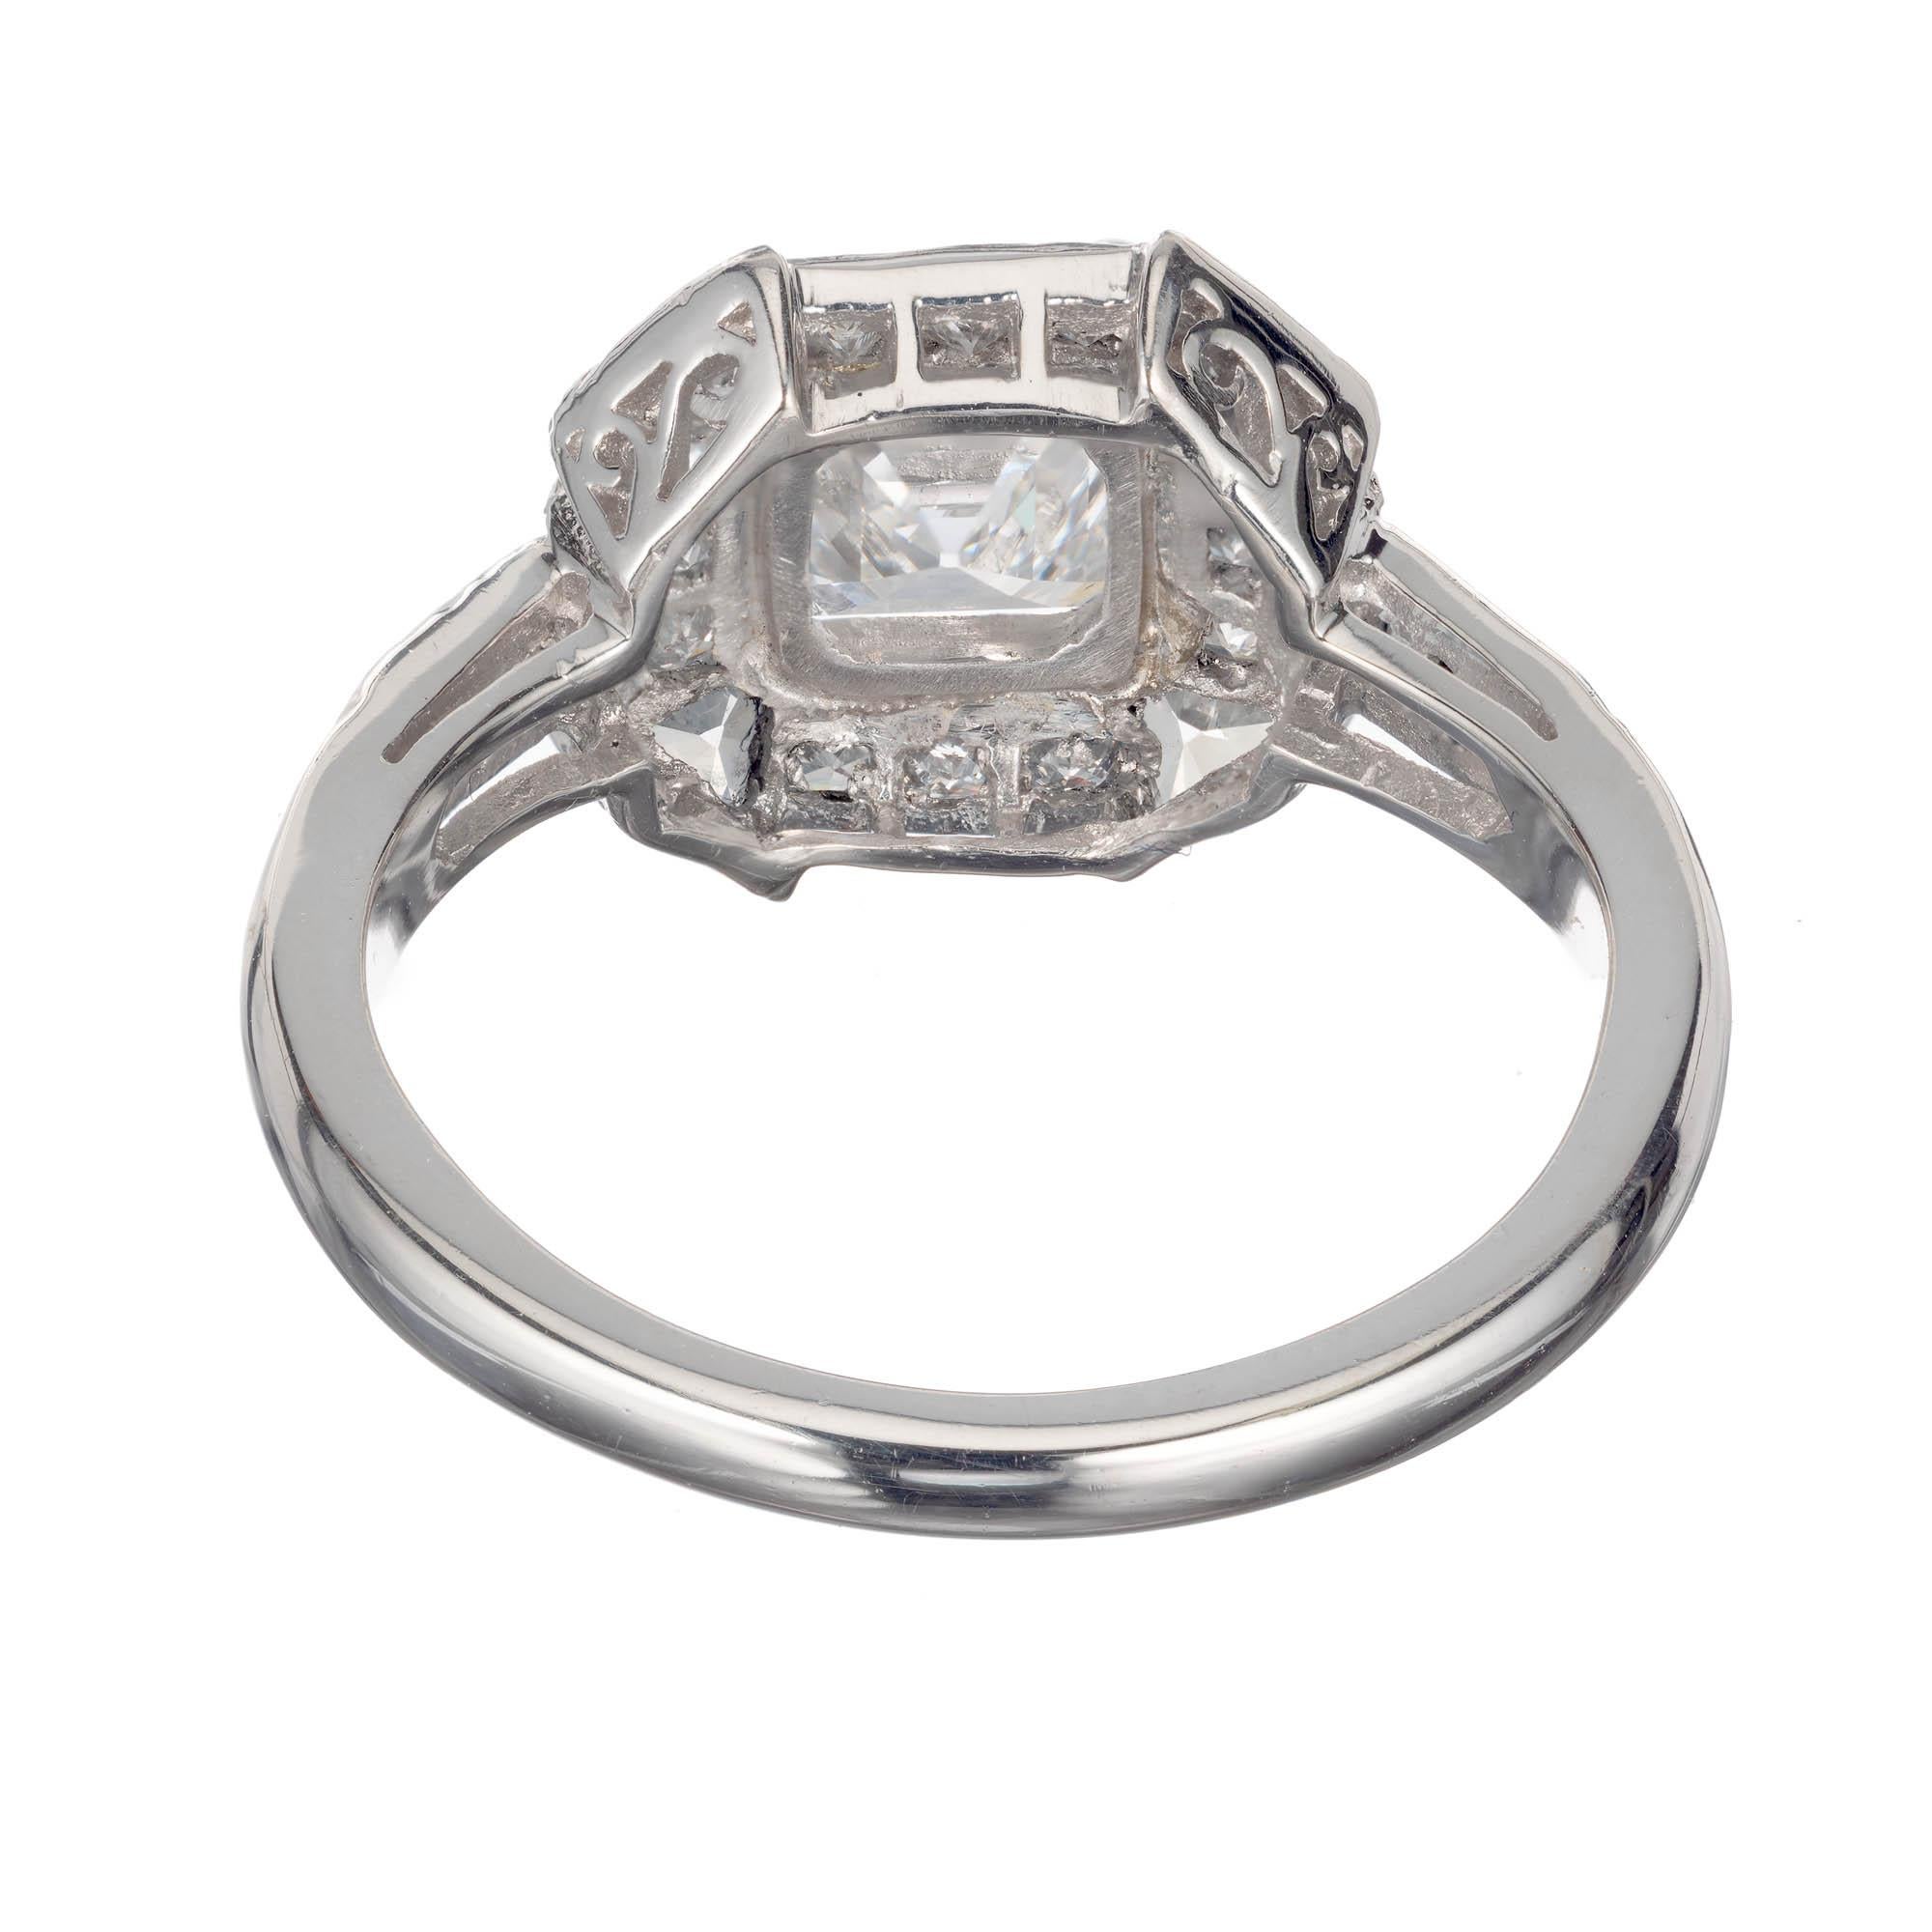 Peter Suchy 1.21 Carat Asscher Cut Diamond Platinum Engagement Ring For Sale 2